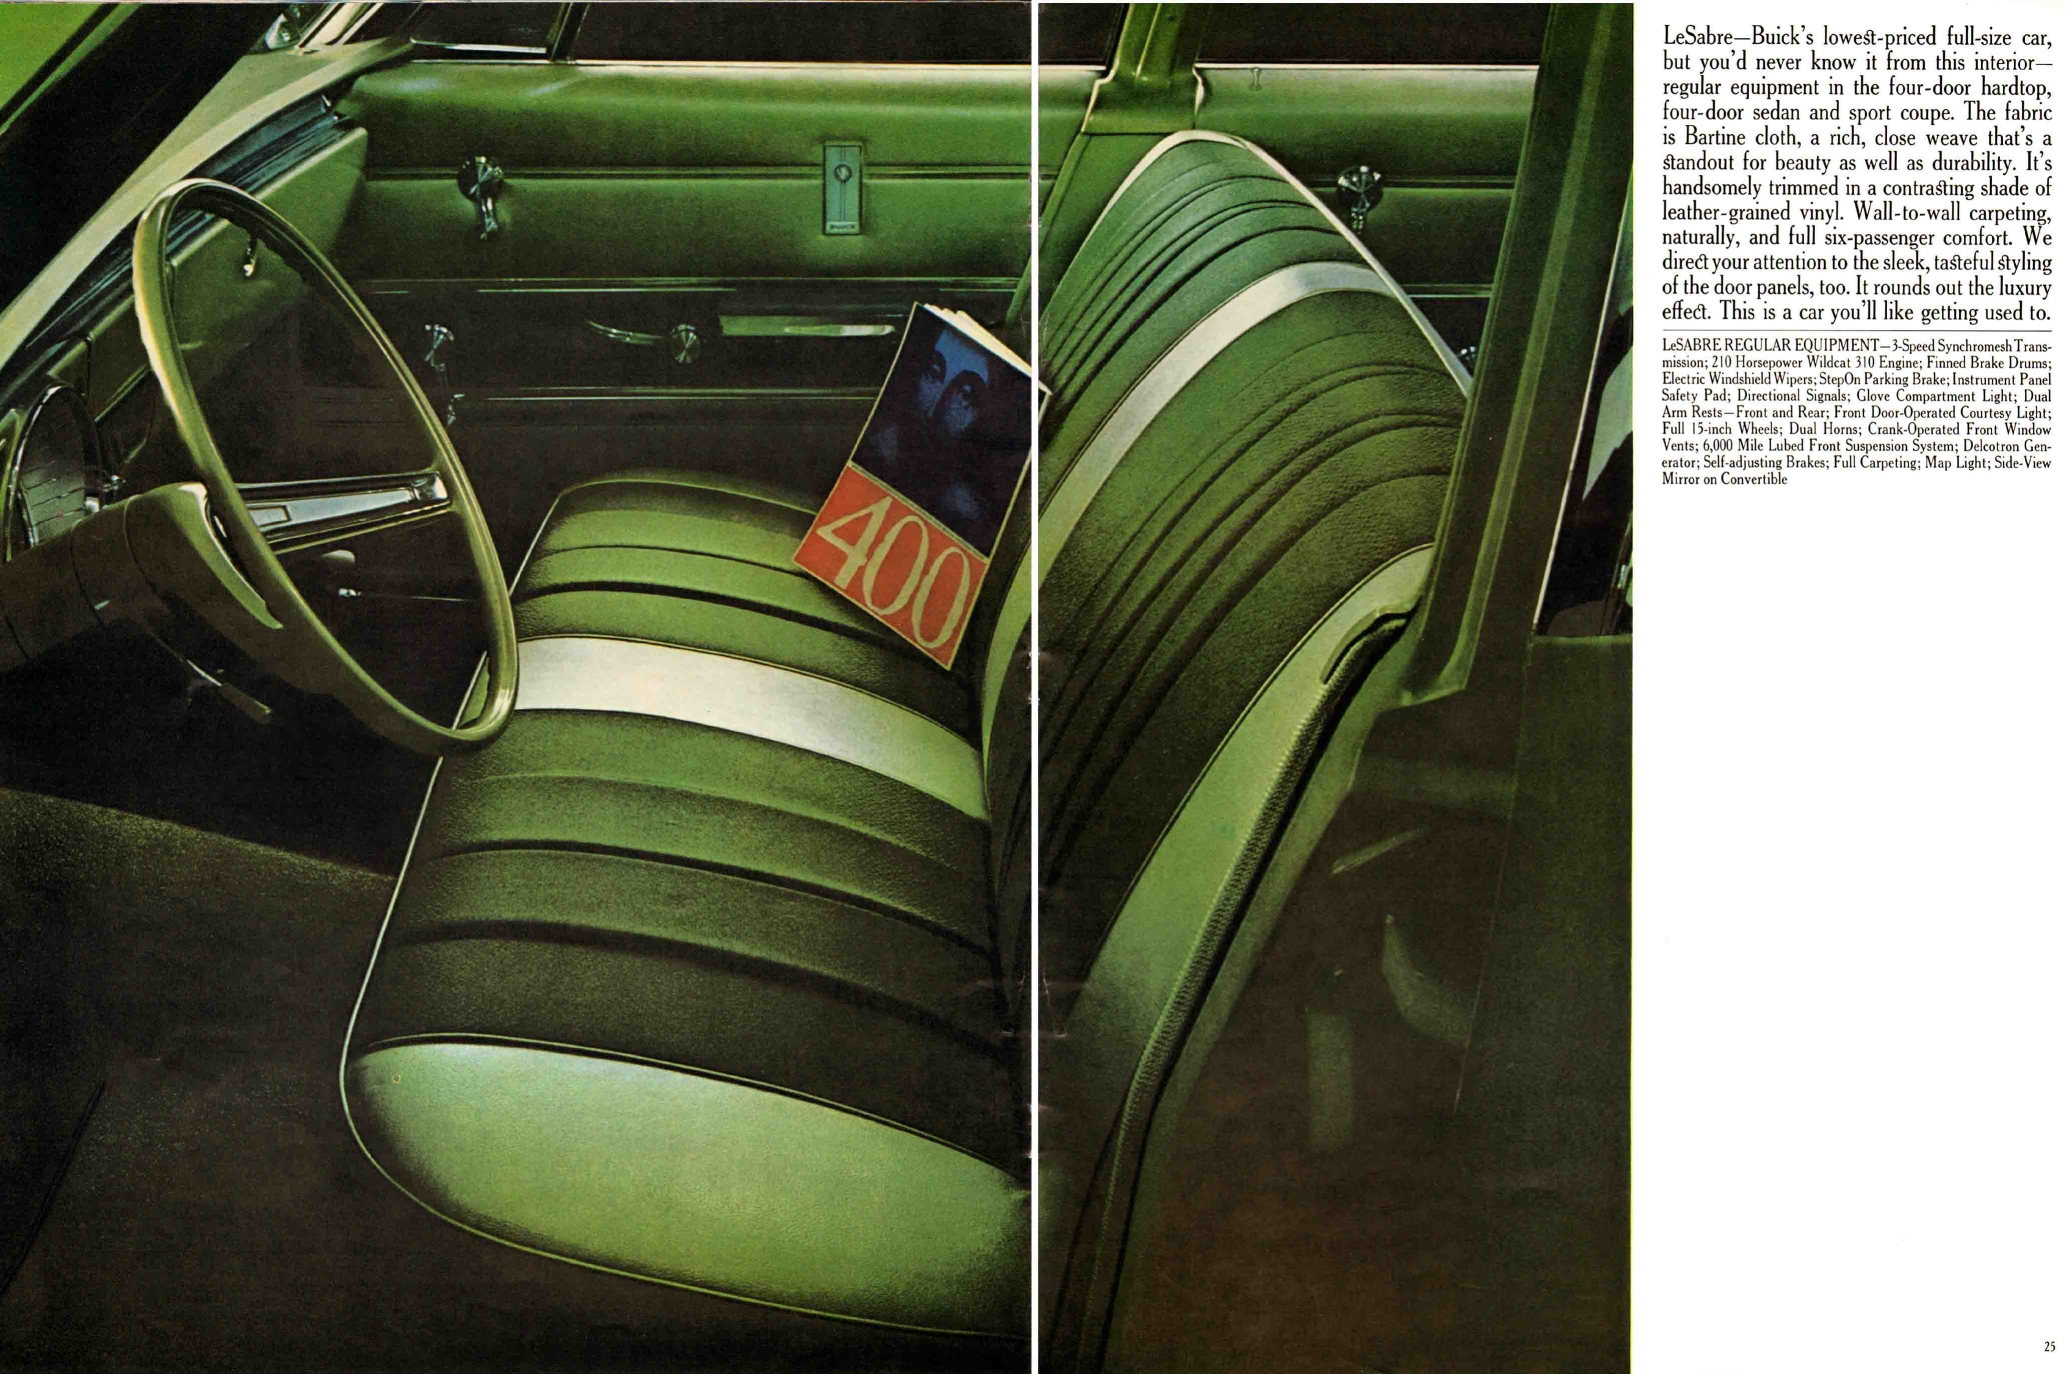 1965 Buick Full Line Prestige-24-25